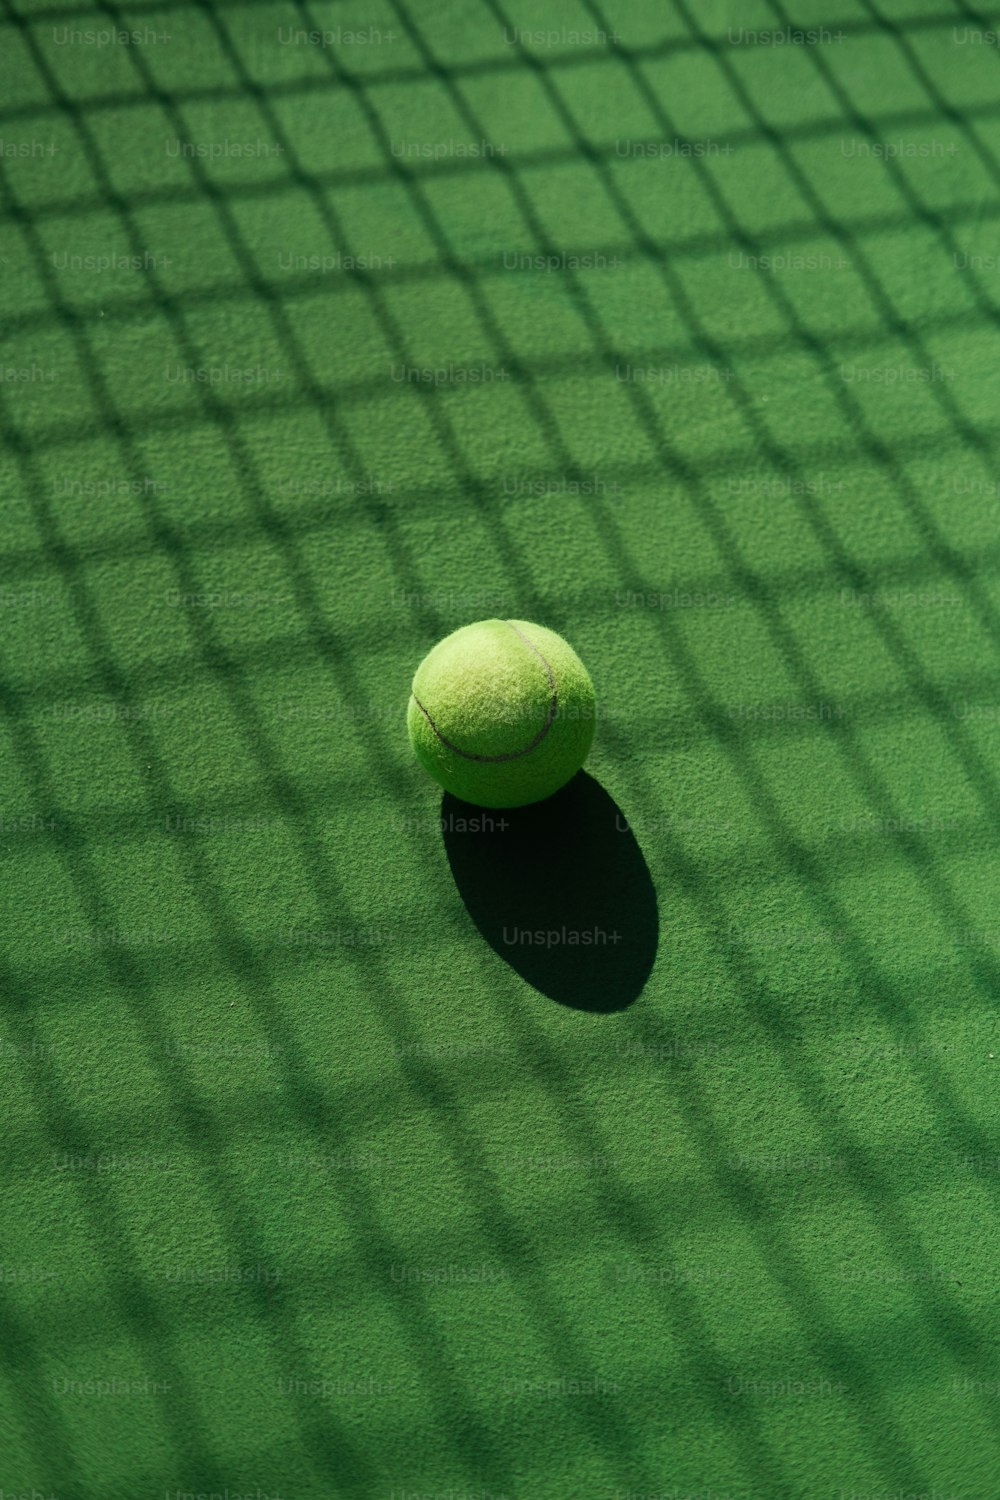 테니스 코트에 앉아 있는 테니스 공